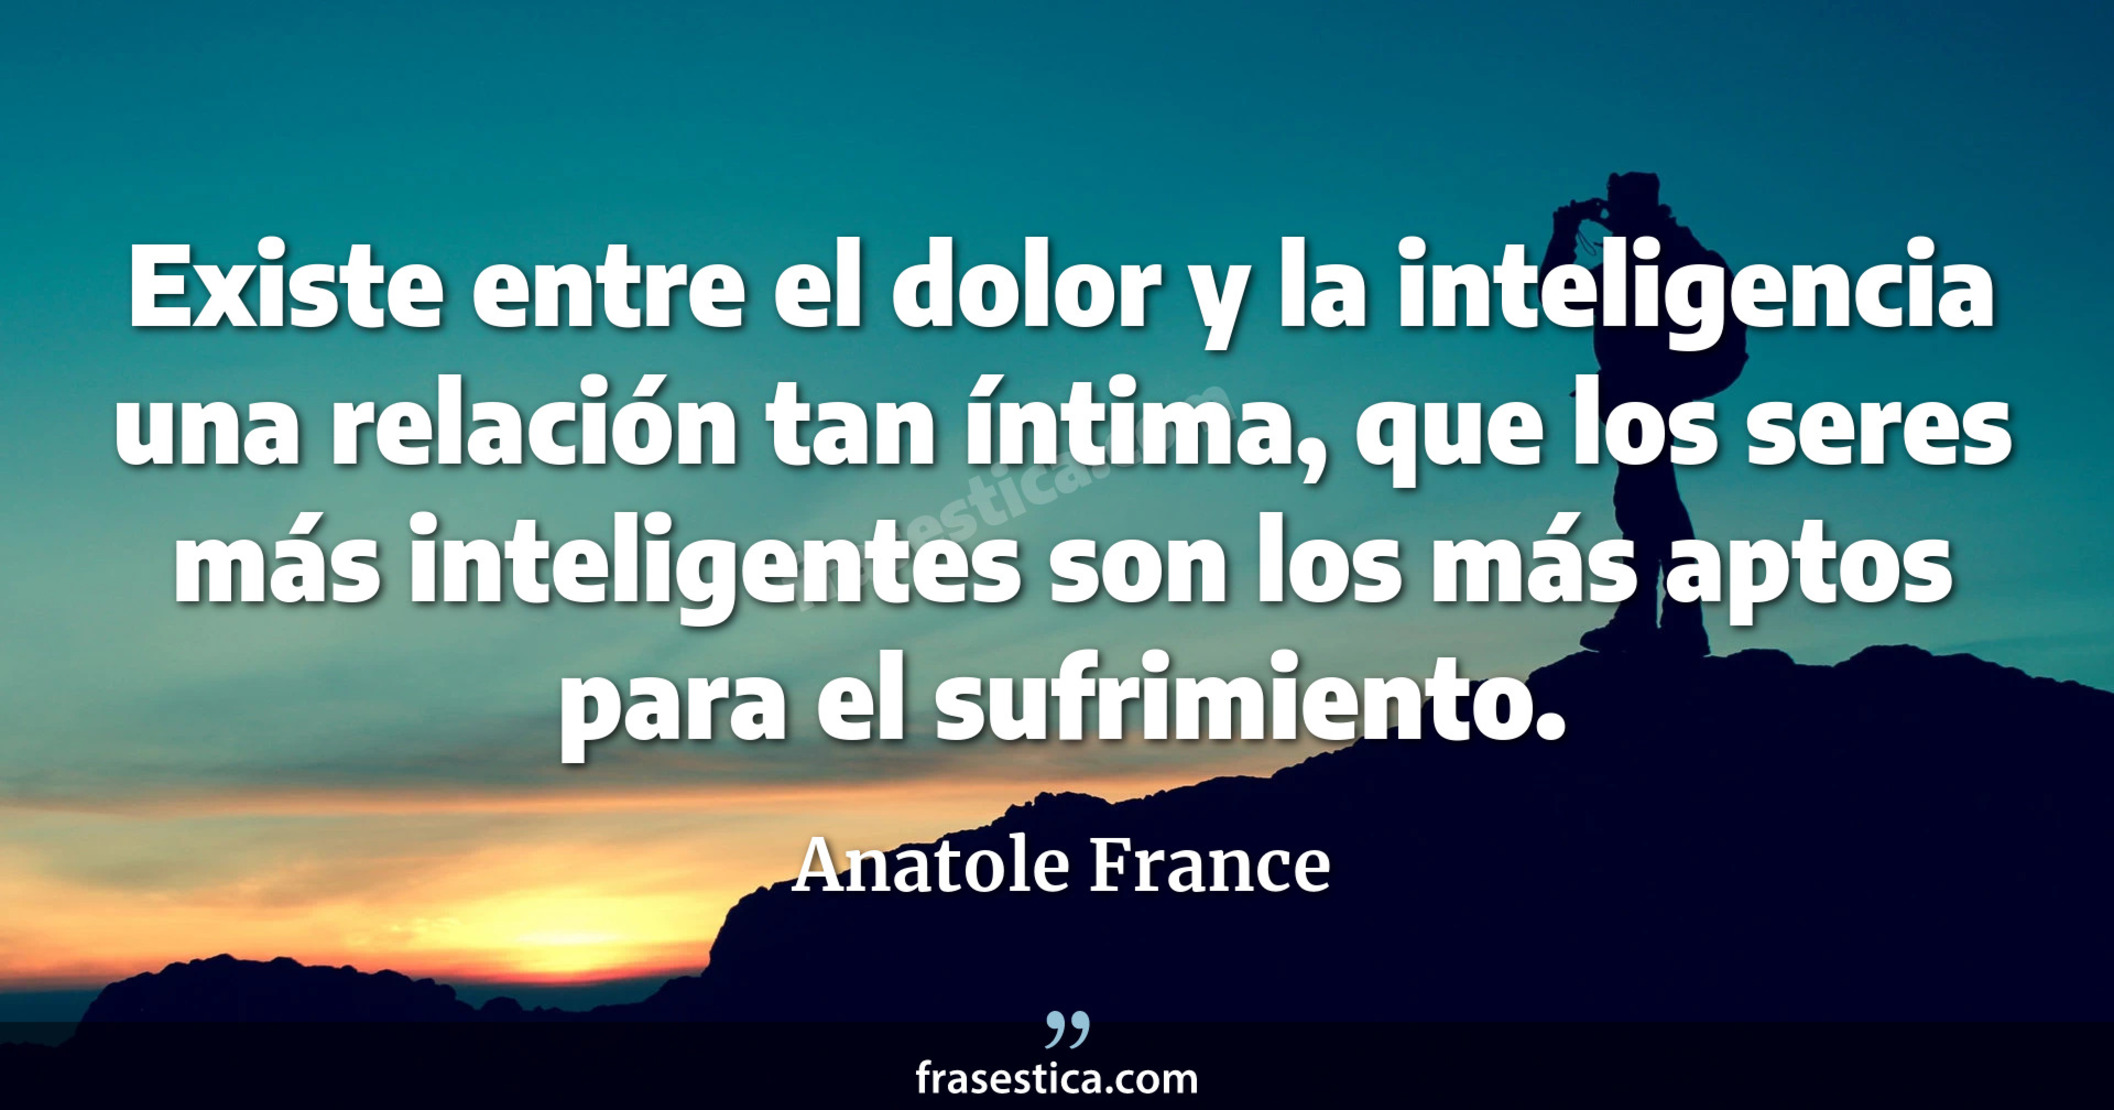 Existe entre el dolor y la inteligencia una relación tan íntima, que los seres más inteligentes son los más aptos para el sufrimiento. - Anatole France